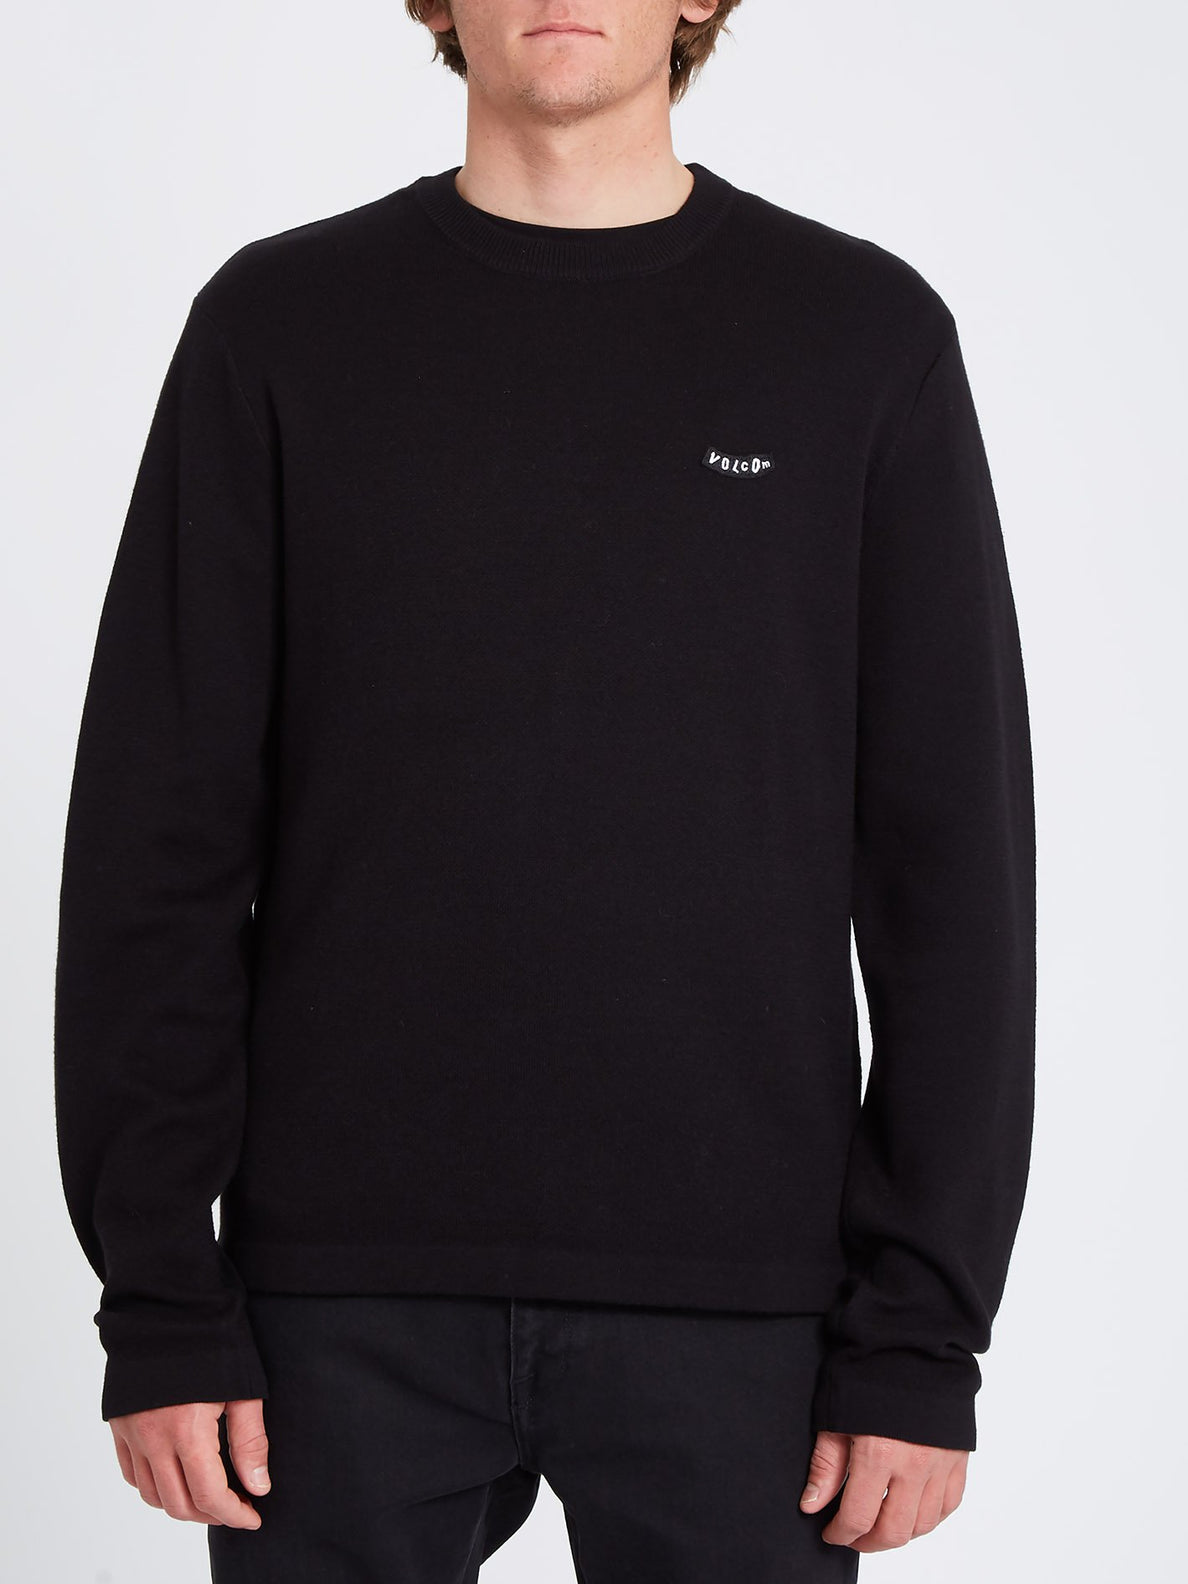 Class Lib Sweater - BLACK